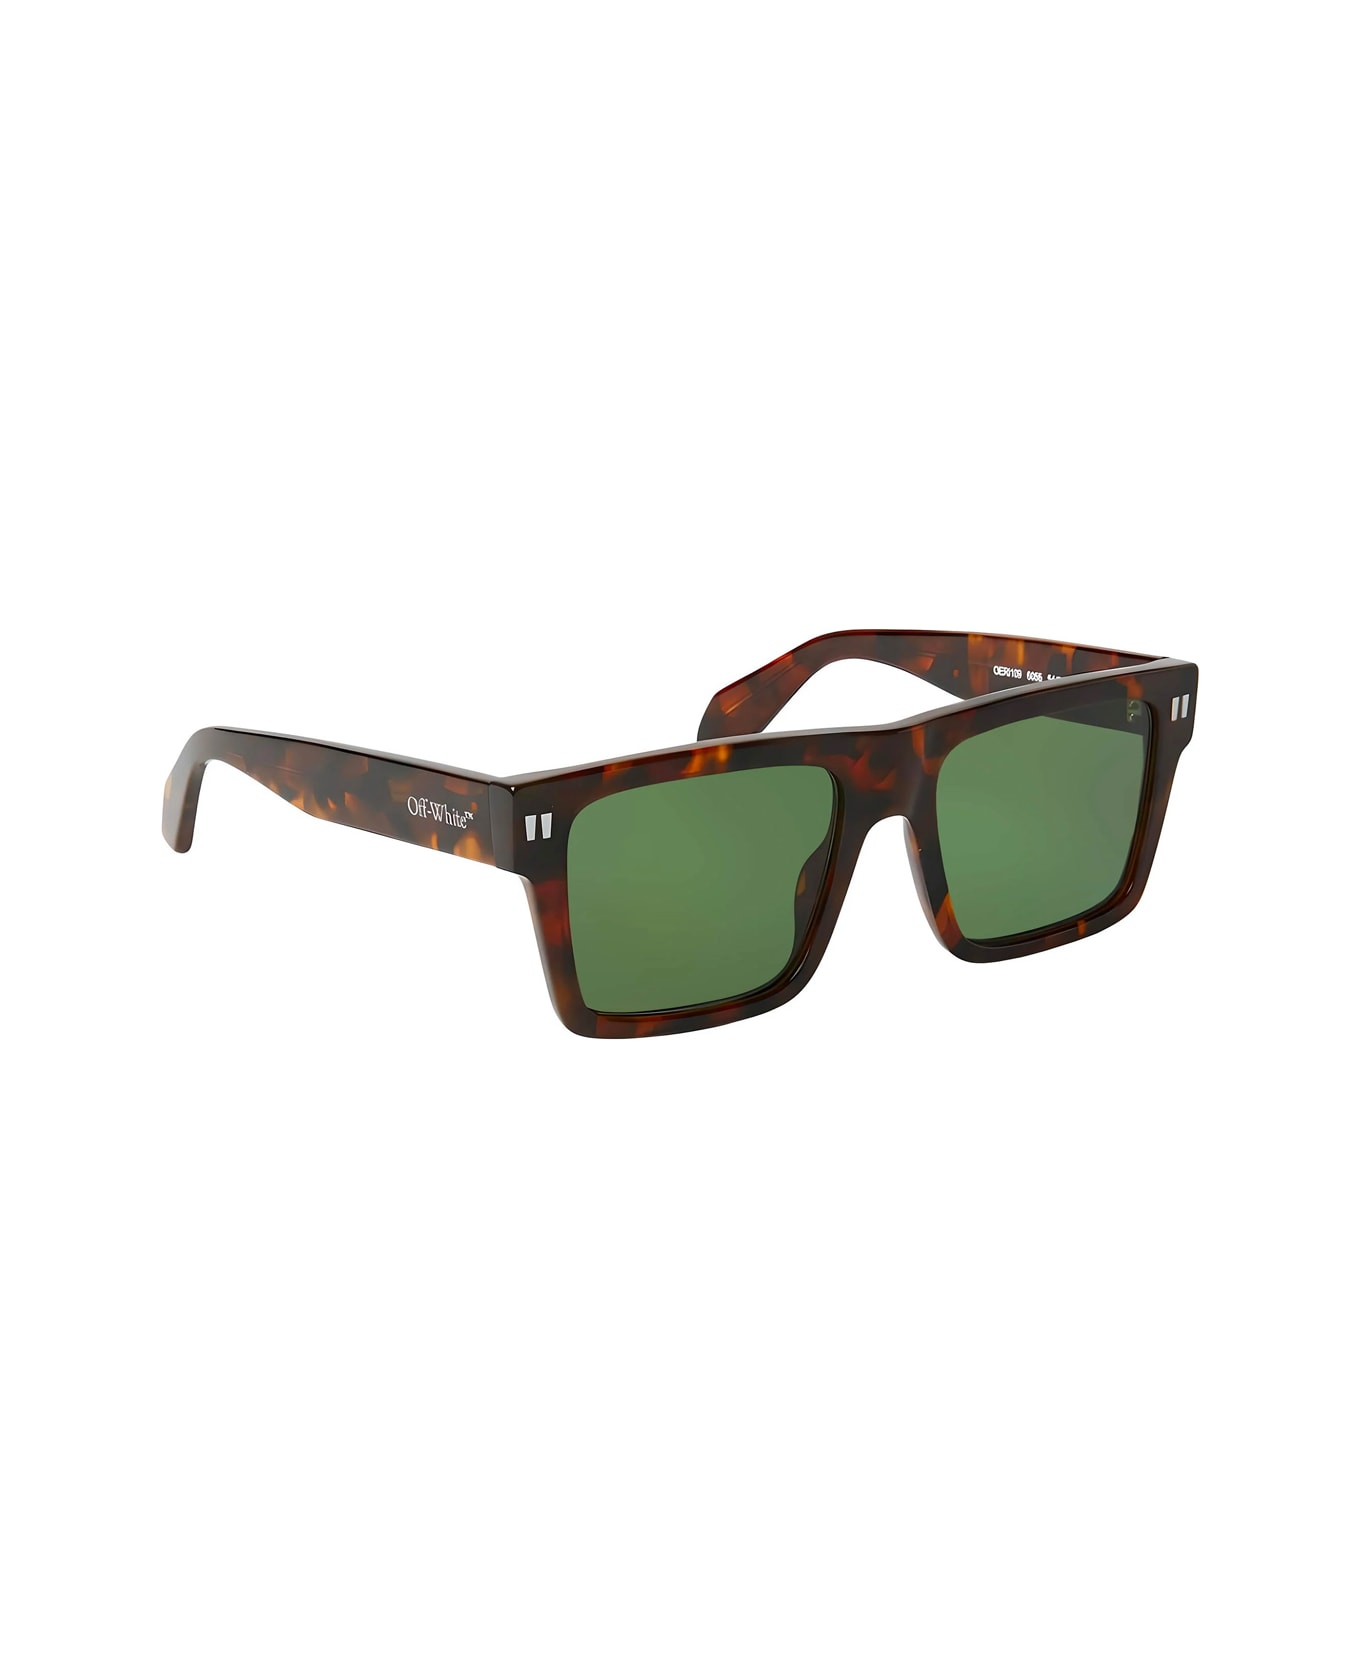 Off-White Oeri109 Lawton 6055 Havana Sunglasses - Marrone サングラス